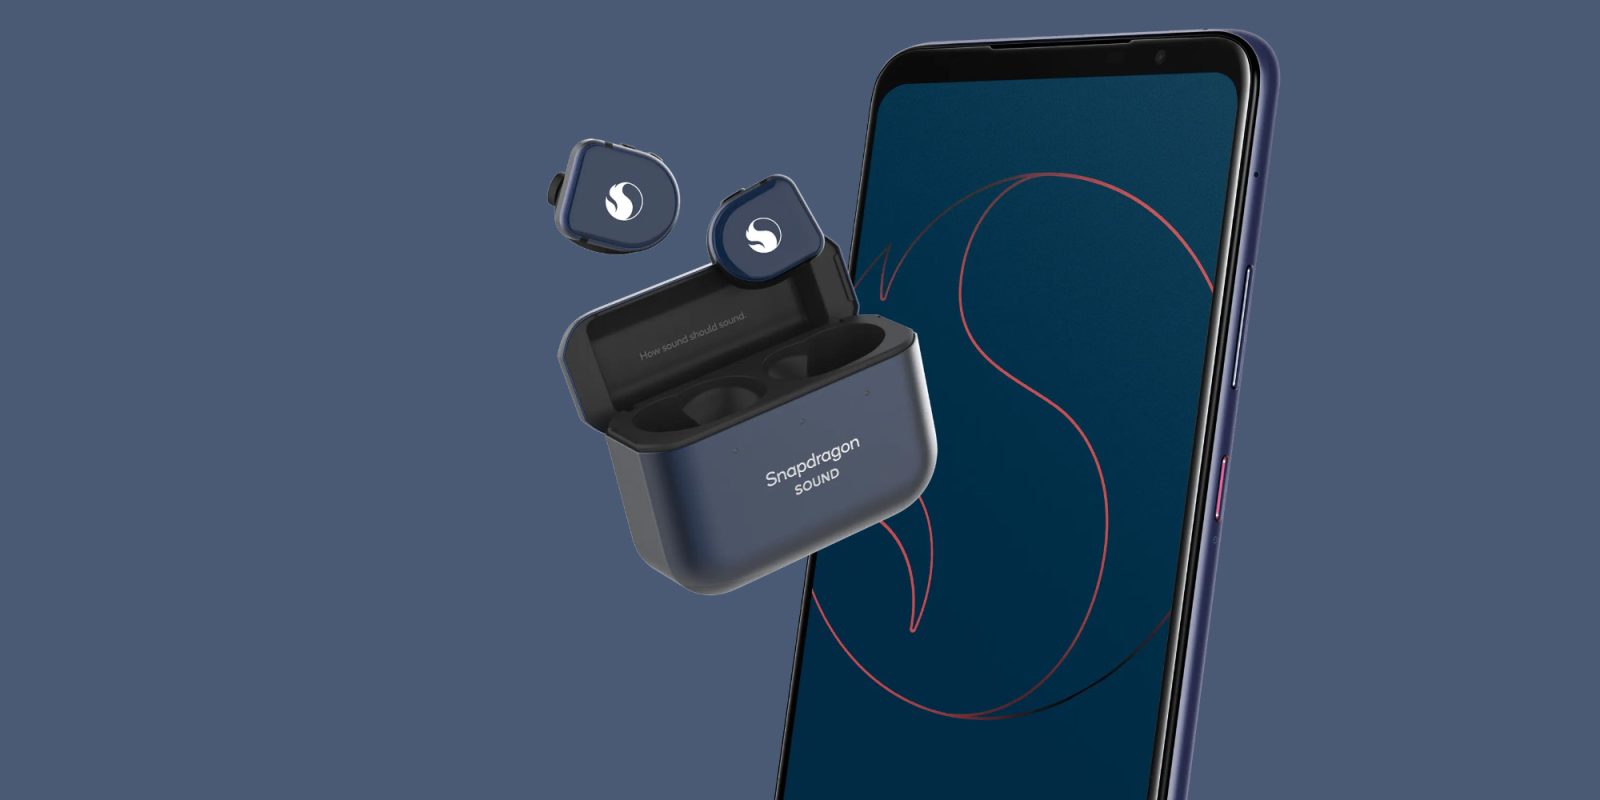 Snapdragon Sound potrebbe presto portare la latenza del Bluetooth a 20 ms